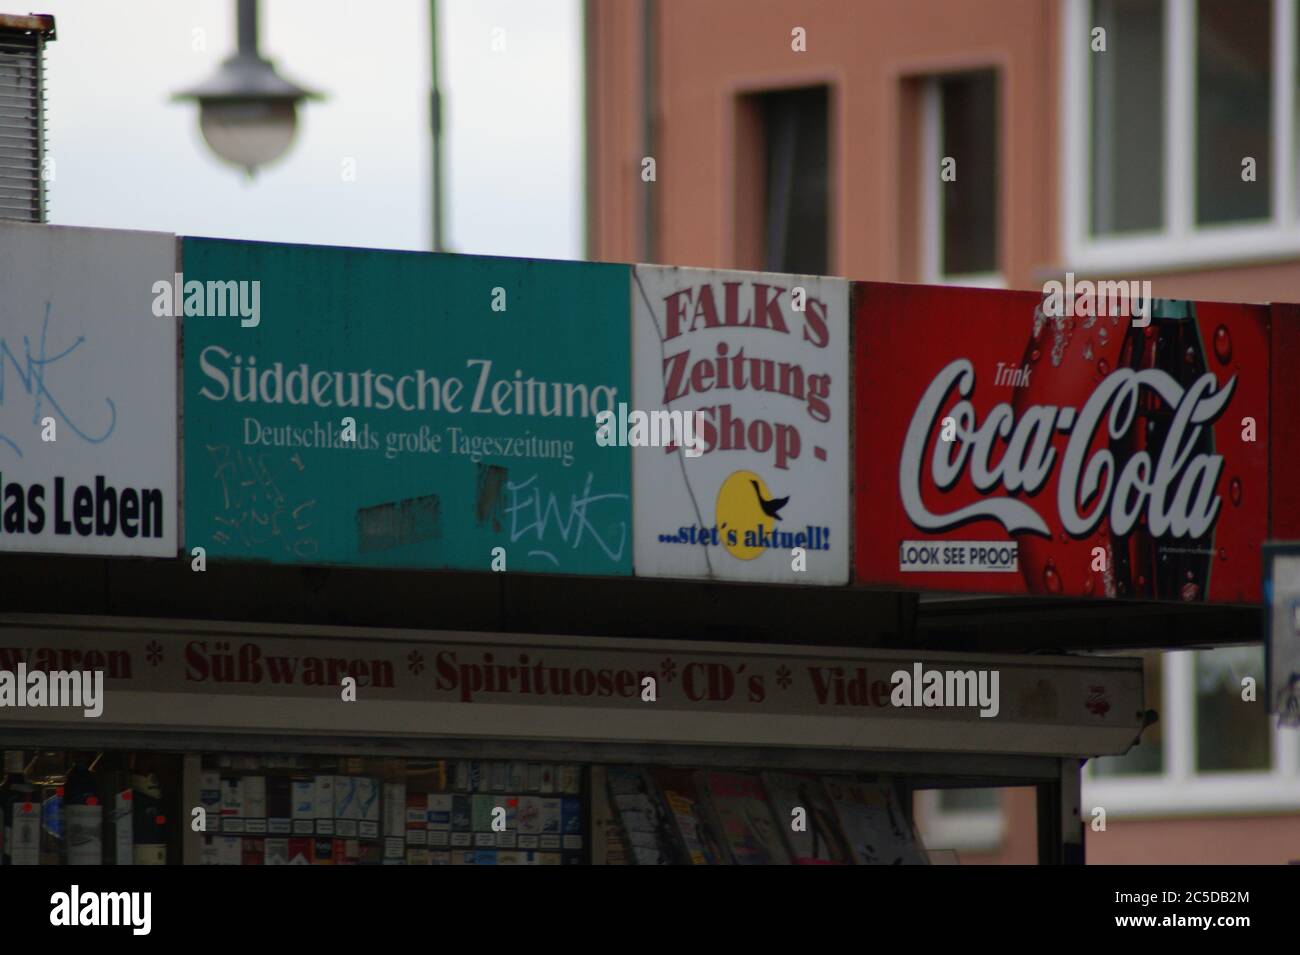 Ein Kiosk, der in seiner Leuchtschrift mit einem 'Deppenapostroph' darauf aufmerksam macht, er wäre 'stet's' aktuell. Stock Photo